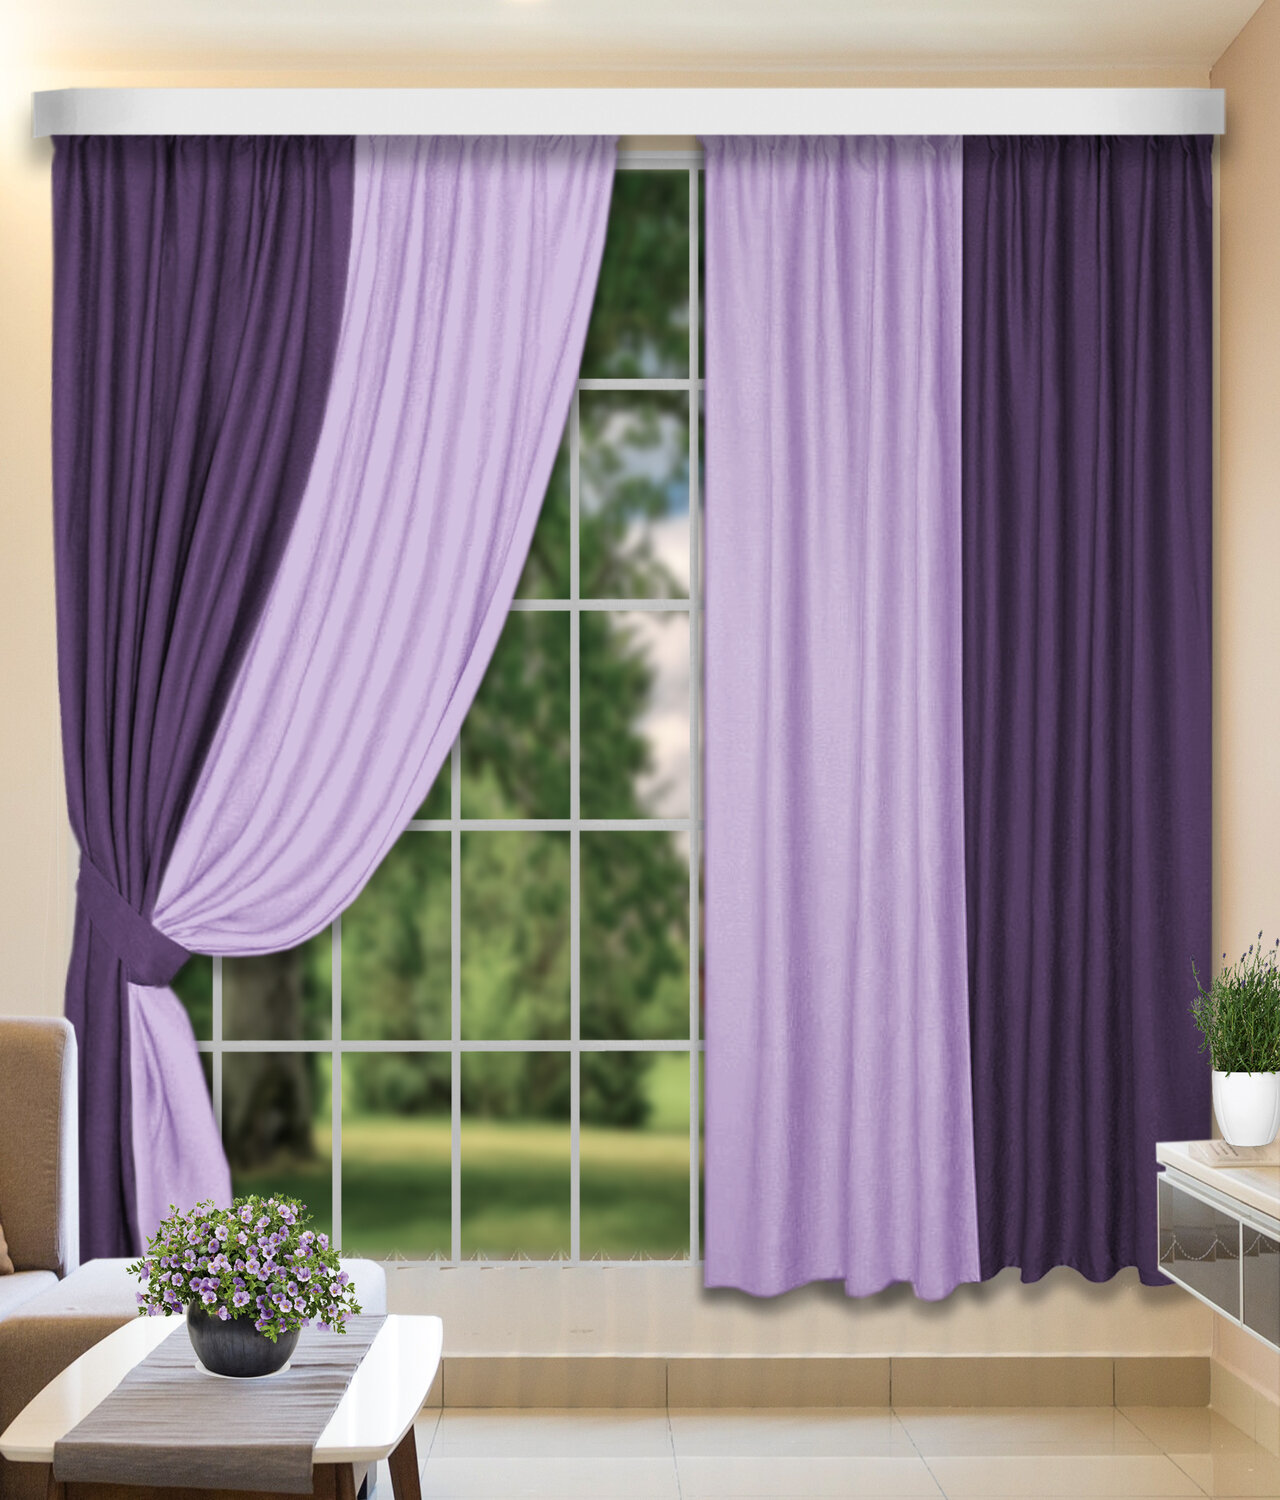 КаСЛ Классические шторы Sharmaine цвет: фиолетовый, сиреневый (160х250 см - 2 шт)